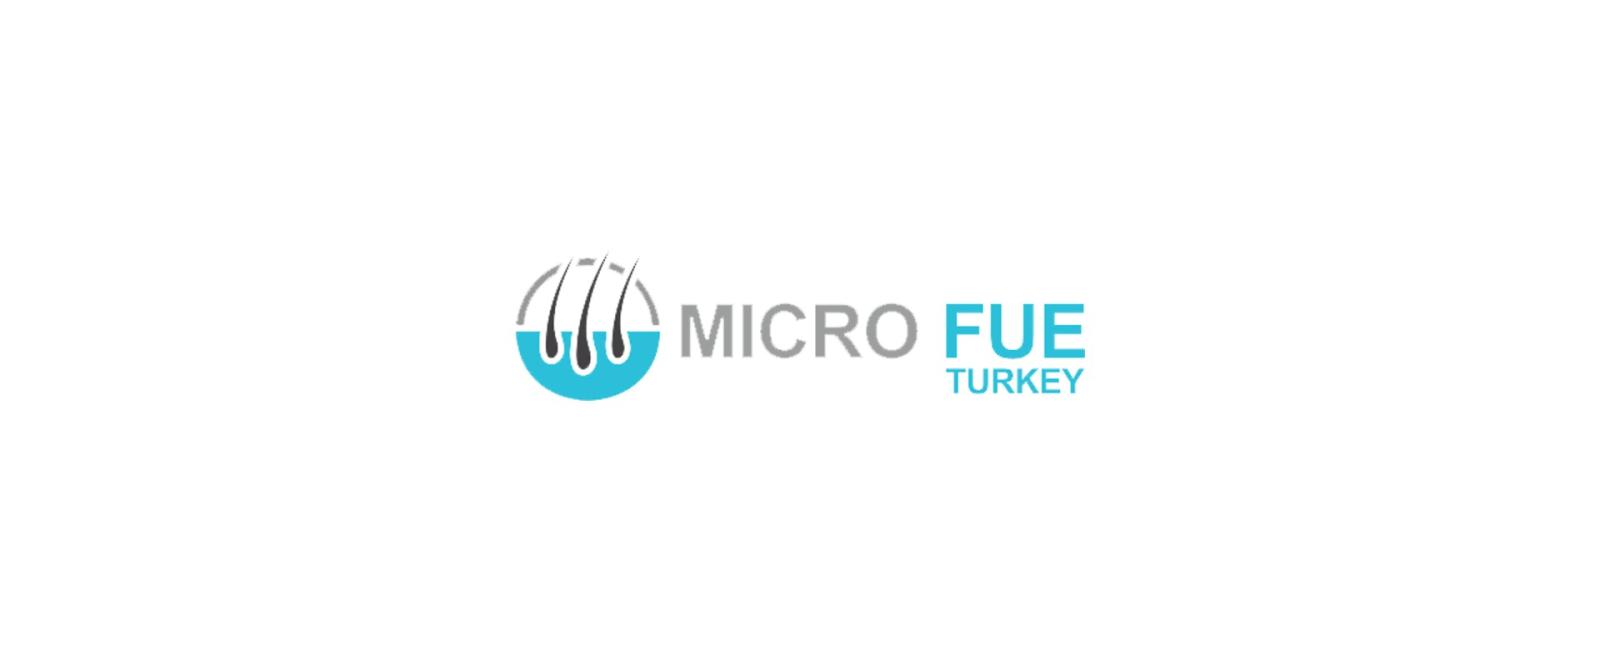 مركز Micro fue Turkey لزراعة الشعر - اسطنبول